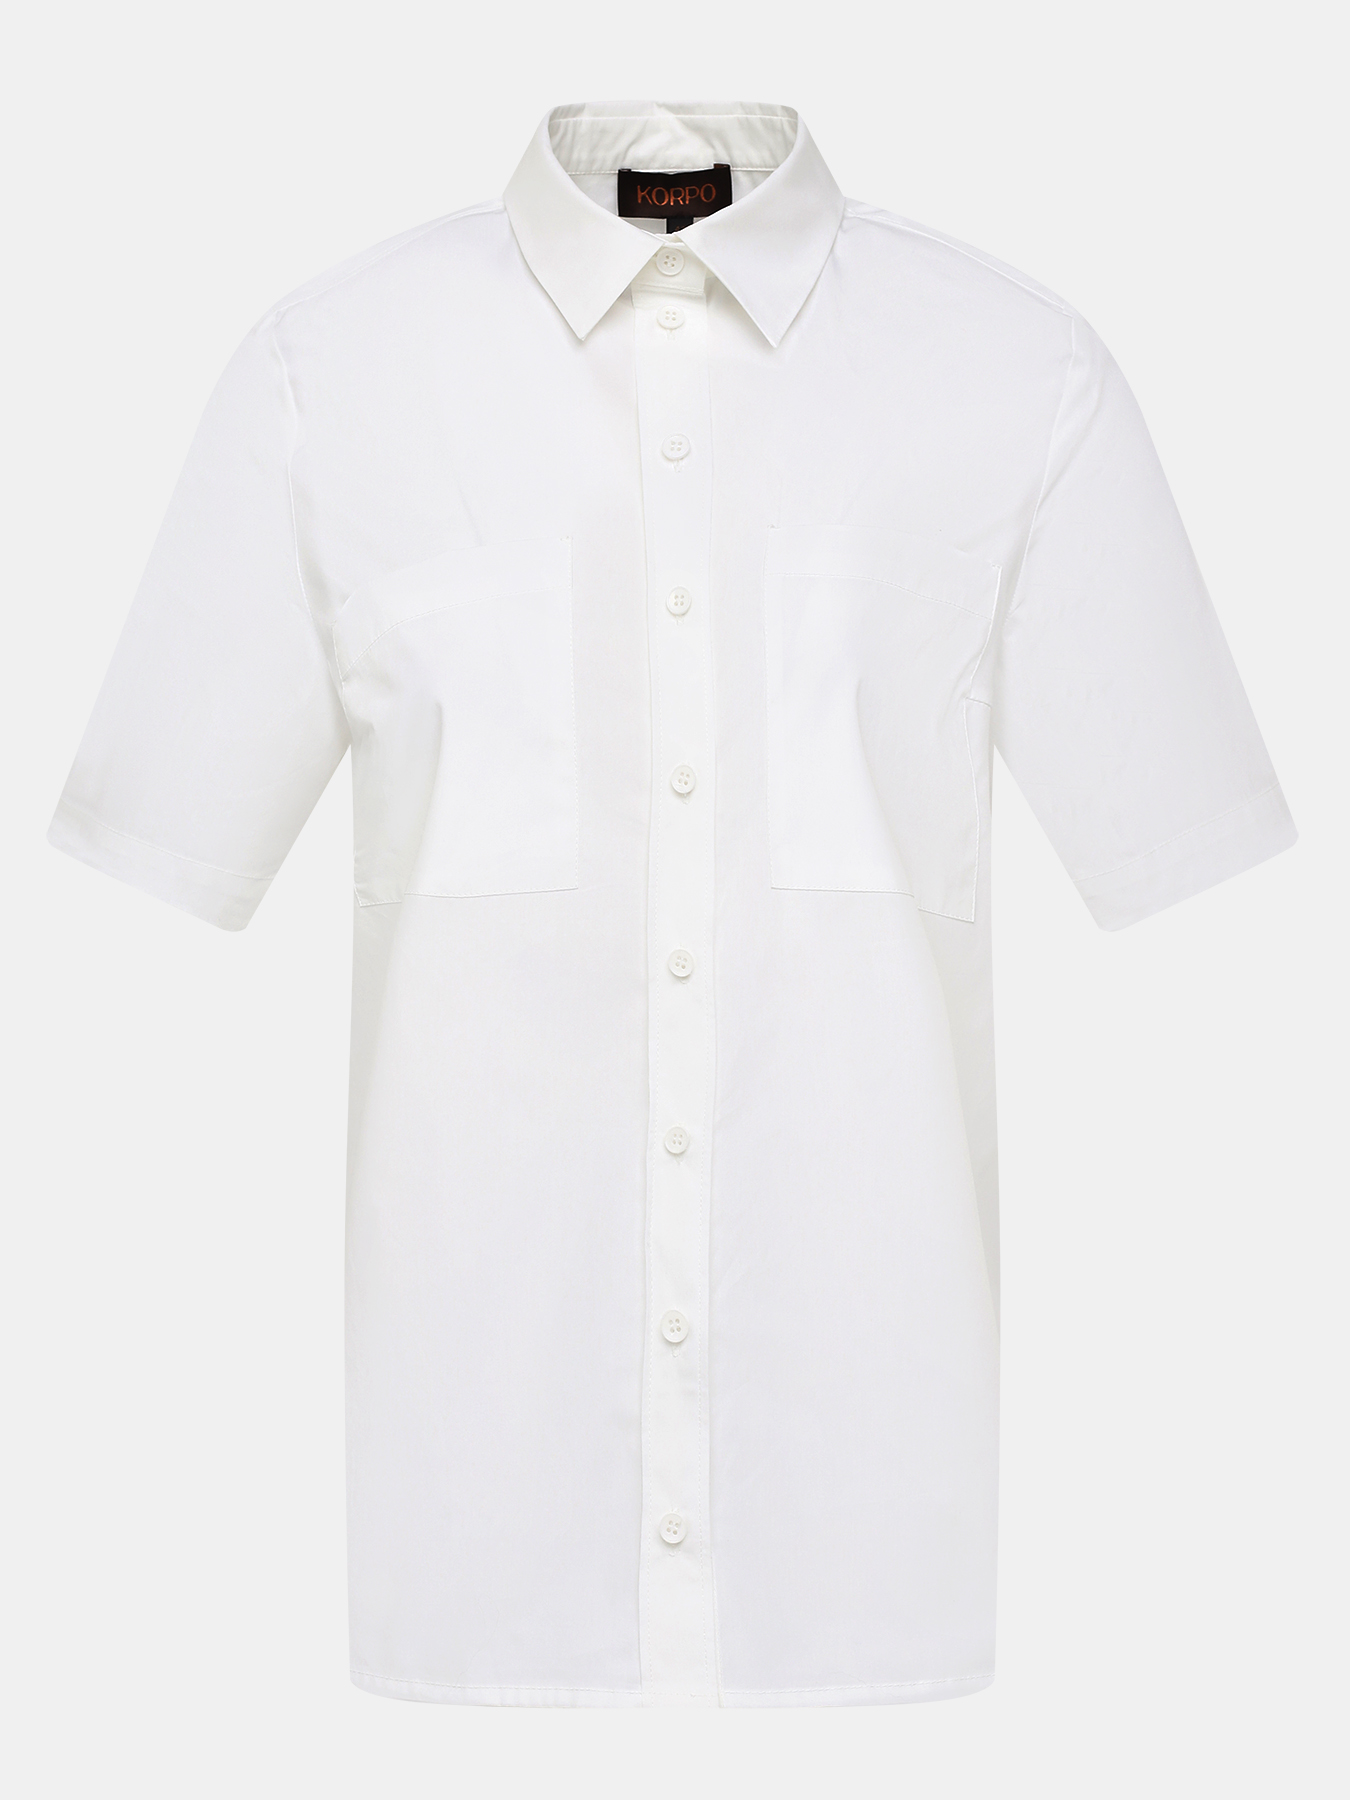 Рубашка Korpo 400231-022